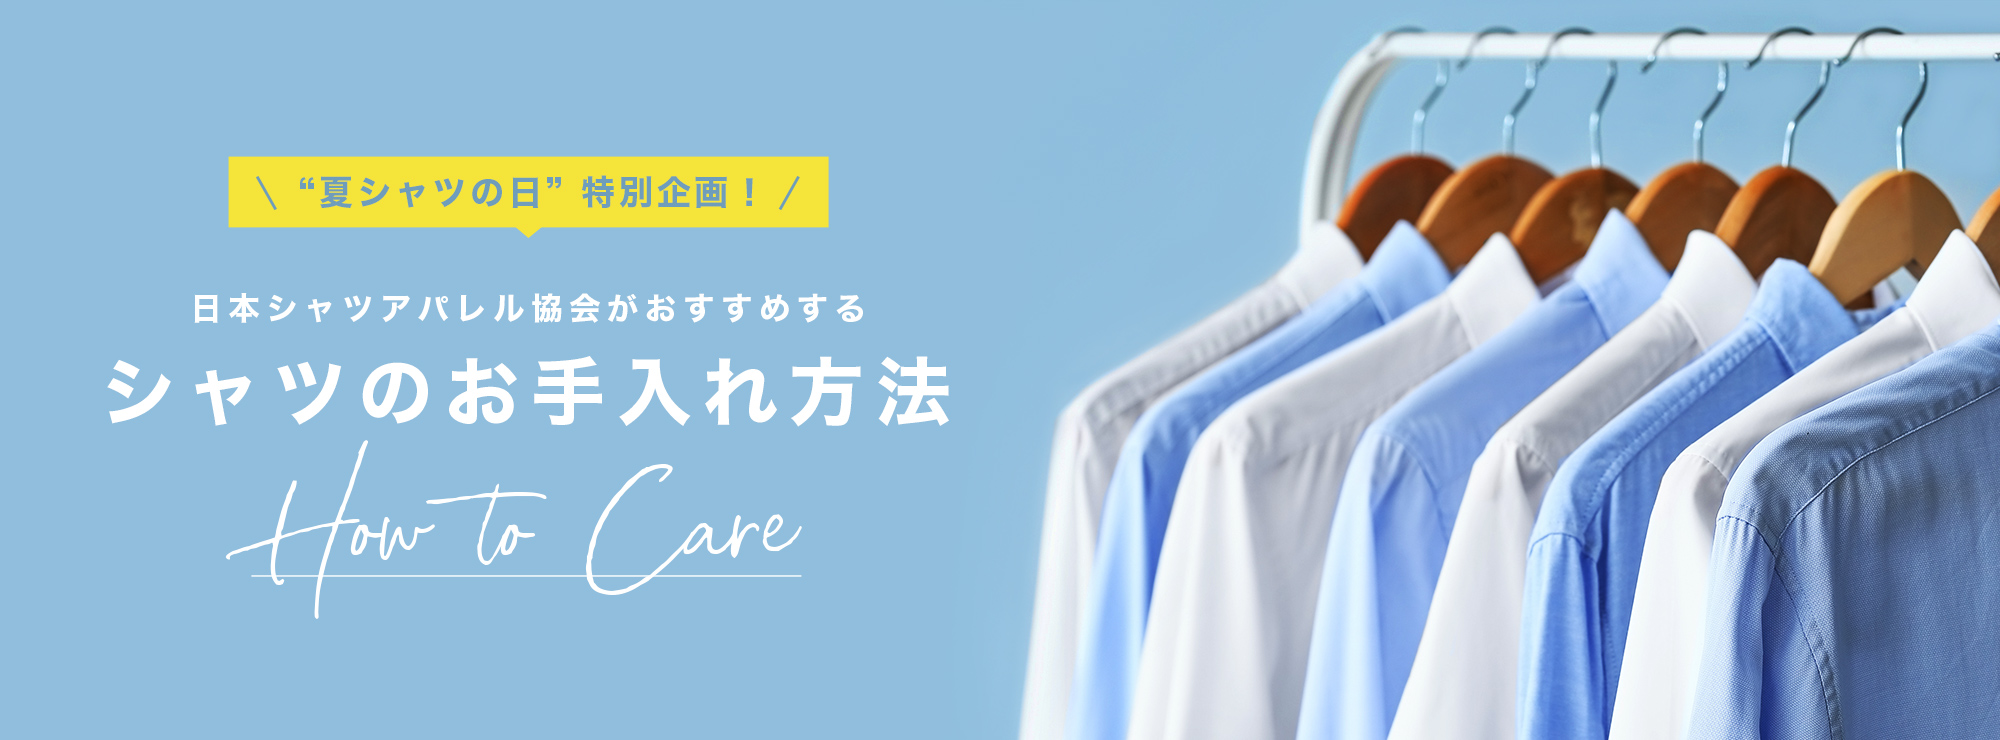 日本シャツアパレル協会がおすすめするシャツのお手入れ方法 ＜How To Care＞